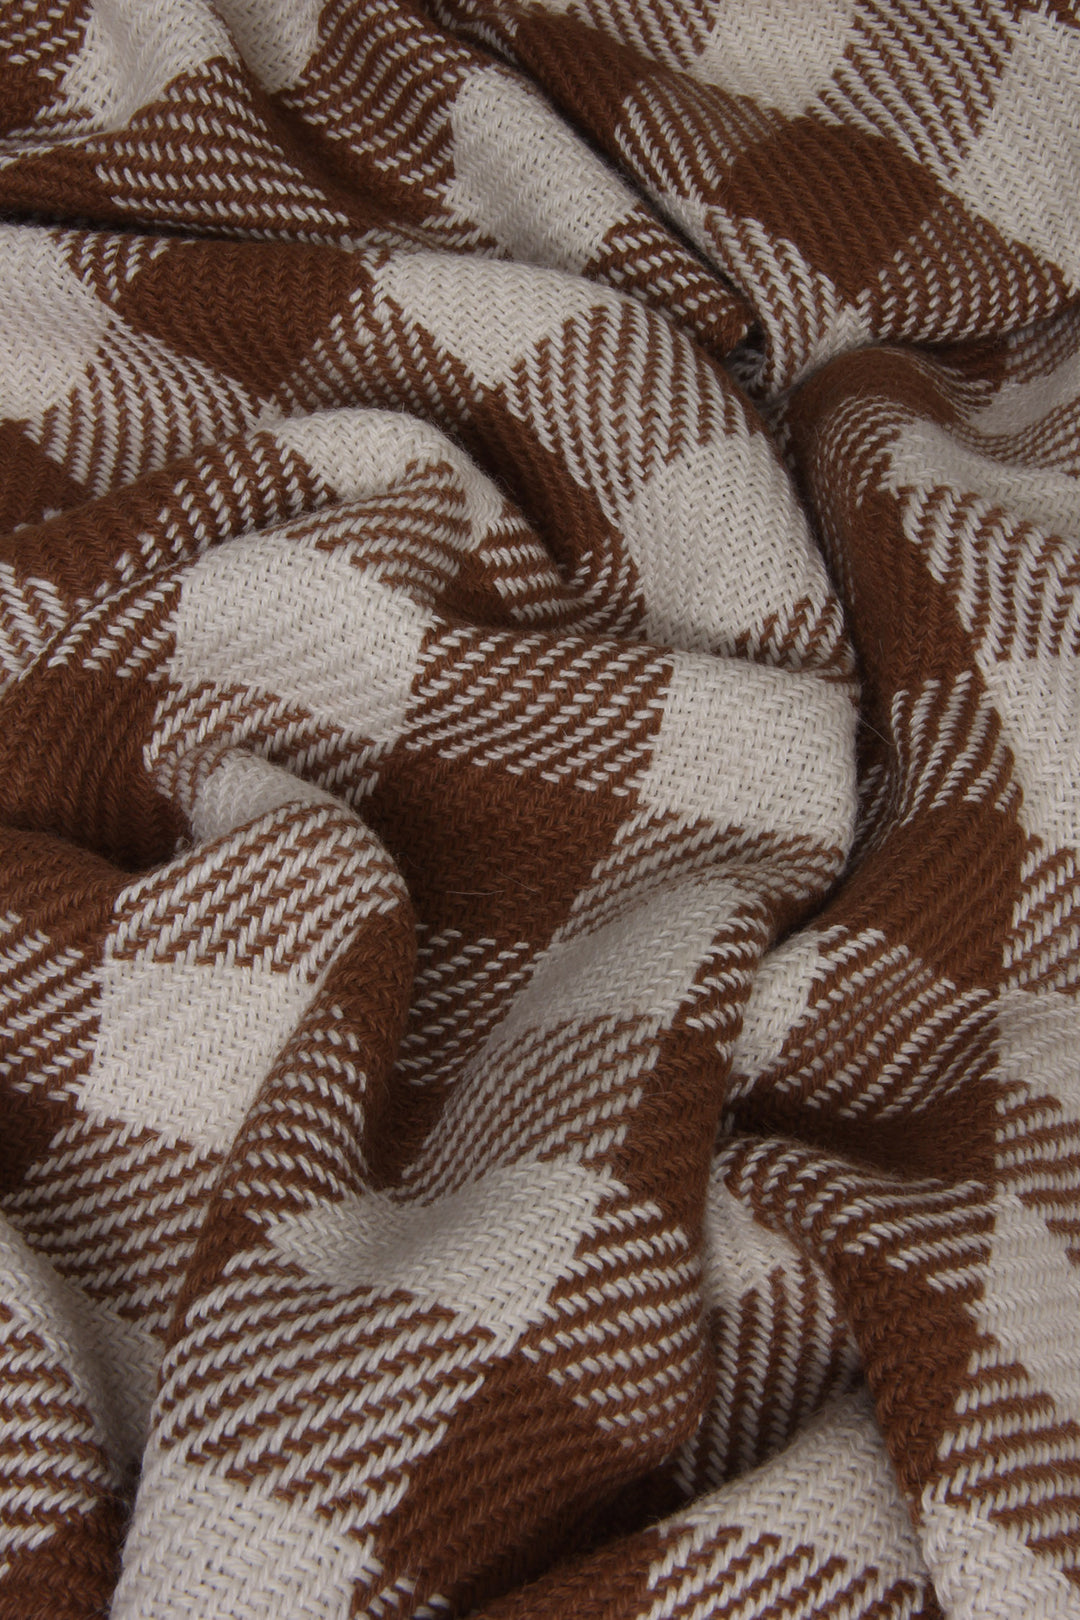 Karierter Schal aus Alpakawolle in braunen und weißen Farben. Muster in Nahaufnahme